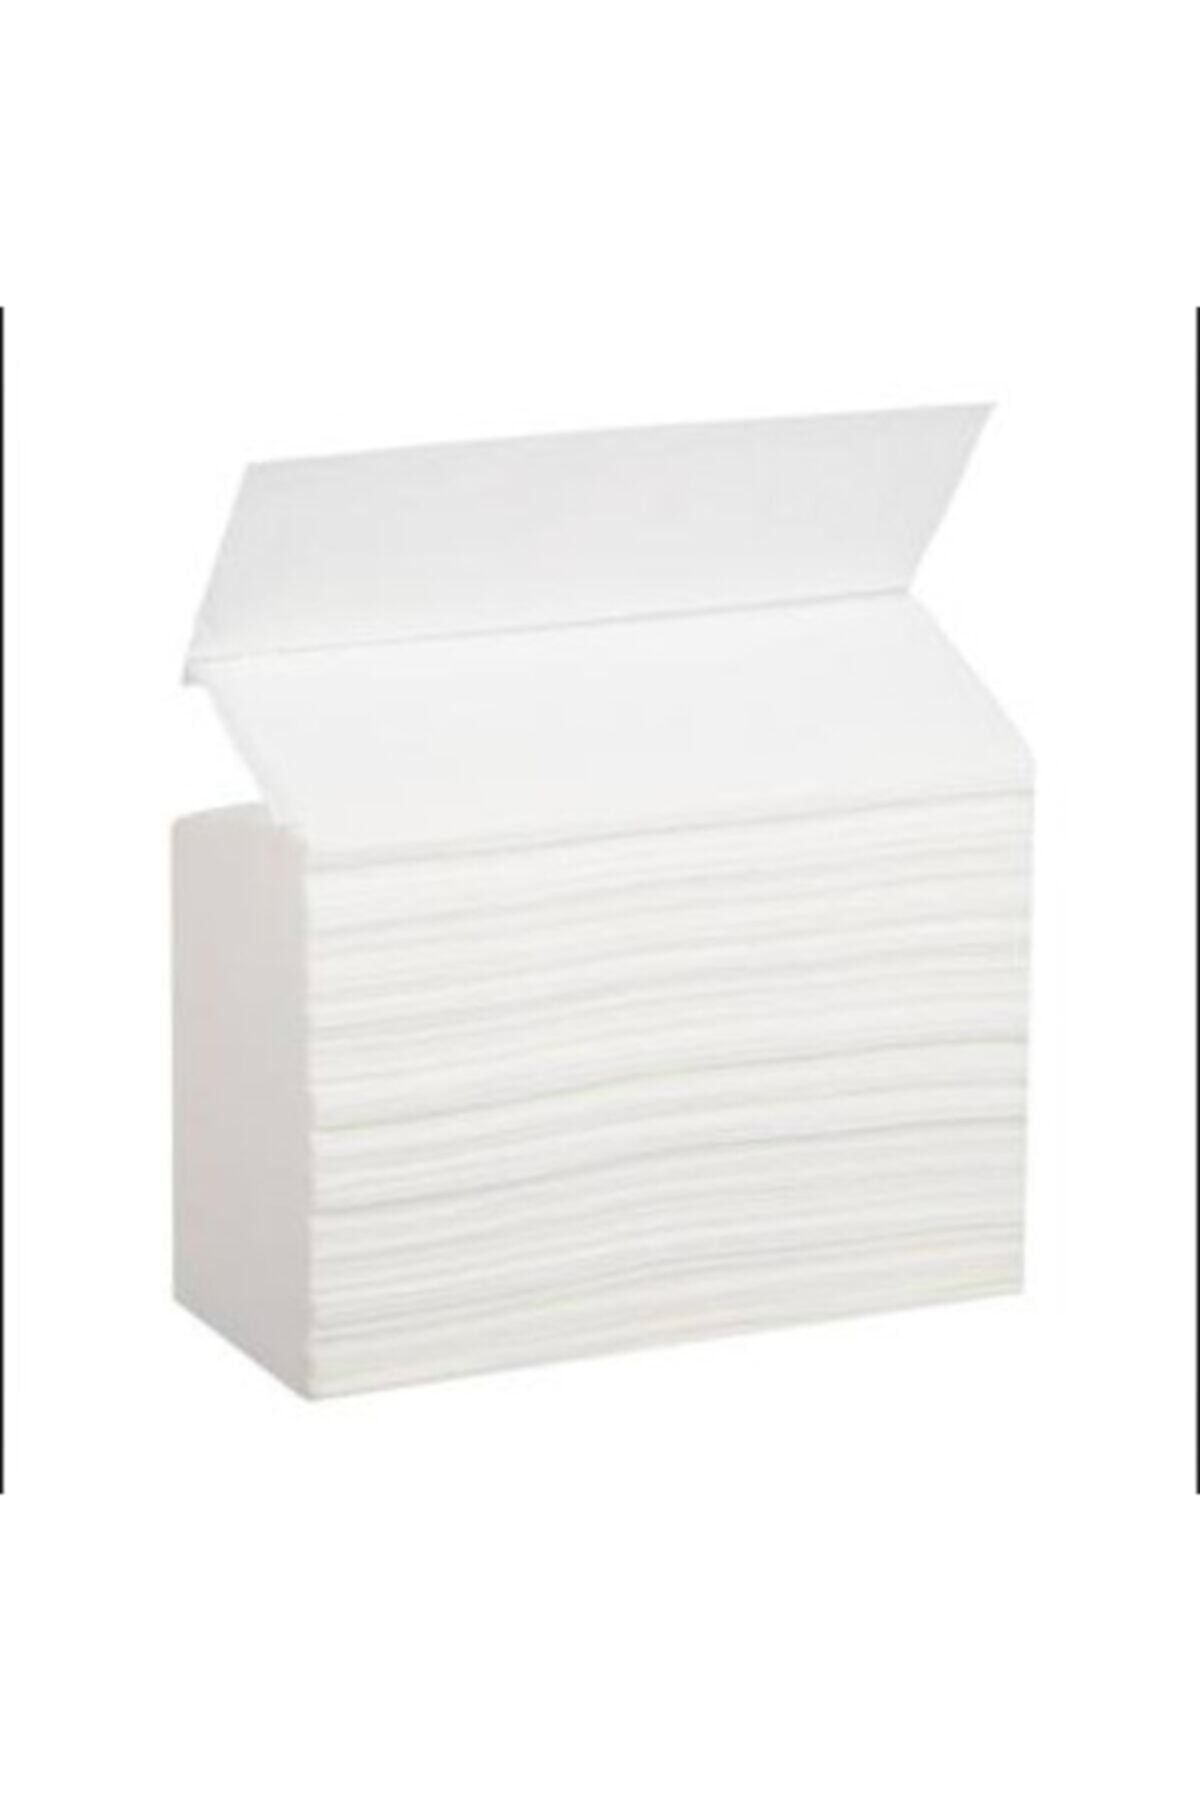 Eren Z Katlı Kağıt Havlu 150'li 12 Paket 20 X 22.5 Cm (1800 Adet)